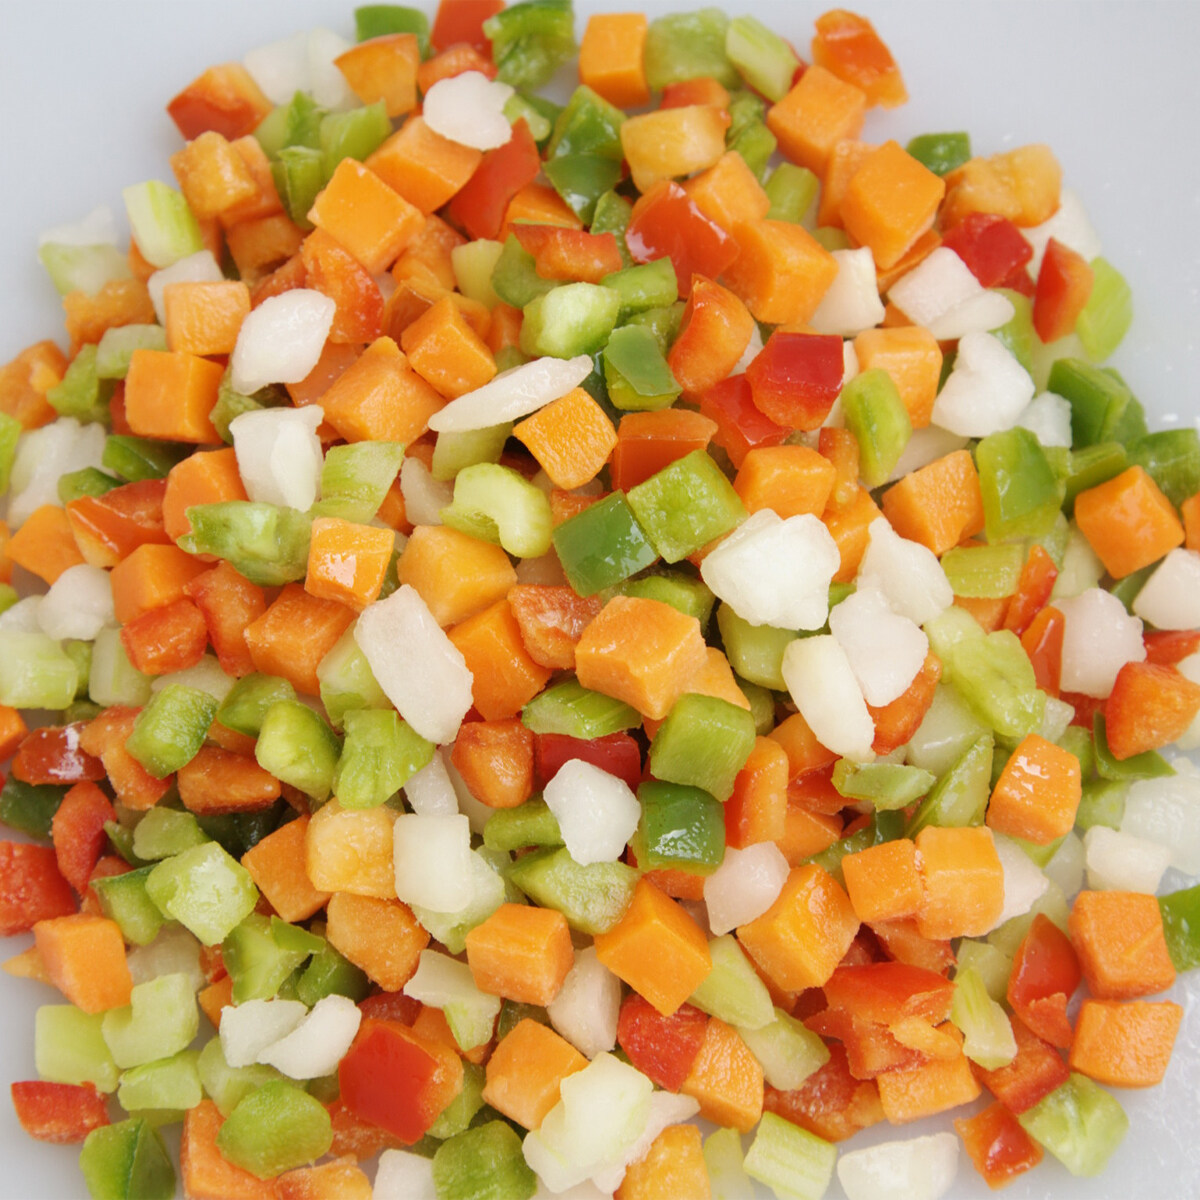 Frozen Carrot Green Peas beans Vegetables Frozen Mixed Vegetables